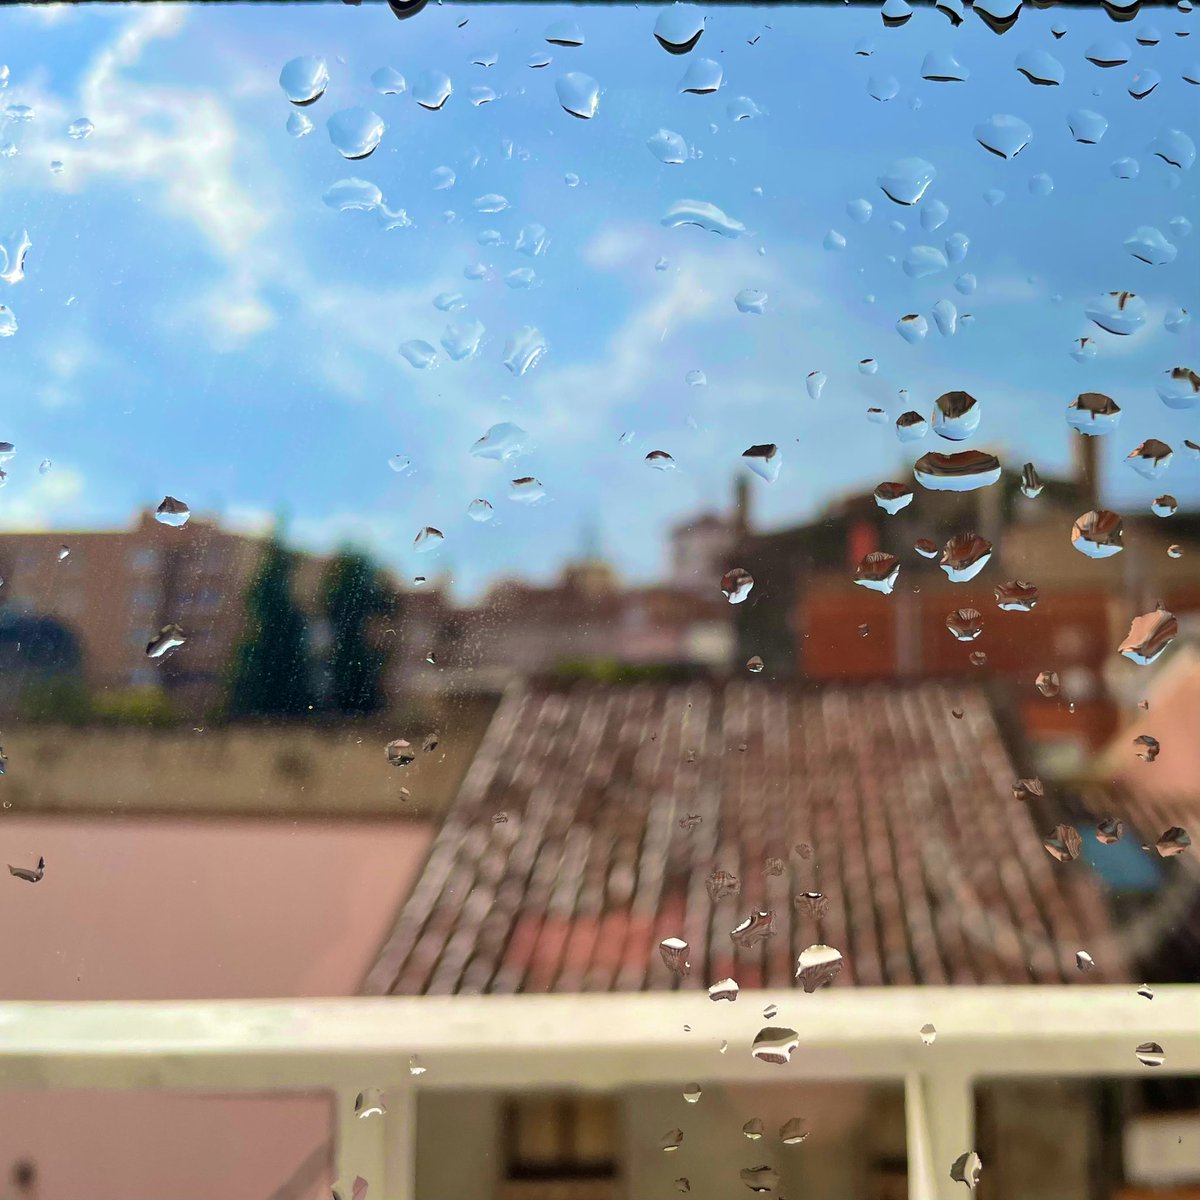 Quant de temps sense veure els vidres mullats per la pluja! #beneïtruixat #benvingudapluja #plouifasol